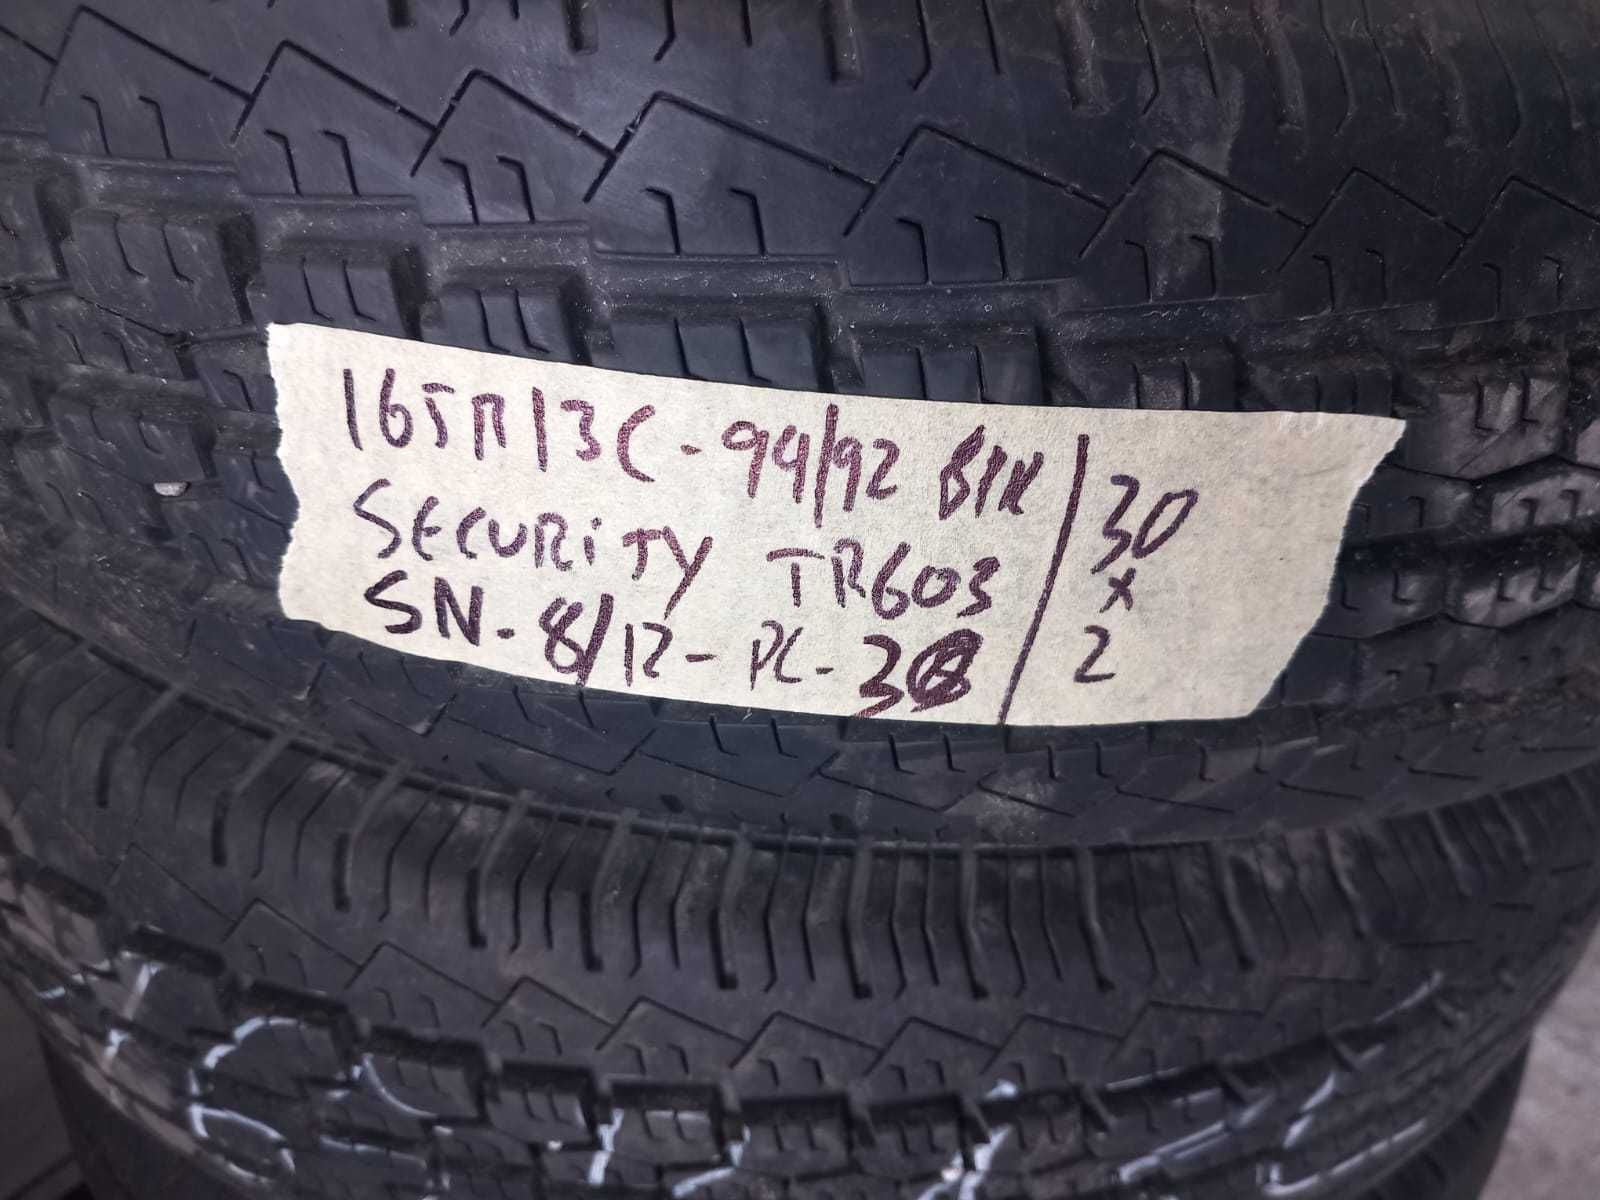 4 pneus 165/80R13 C seminovos